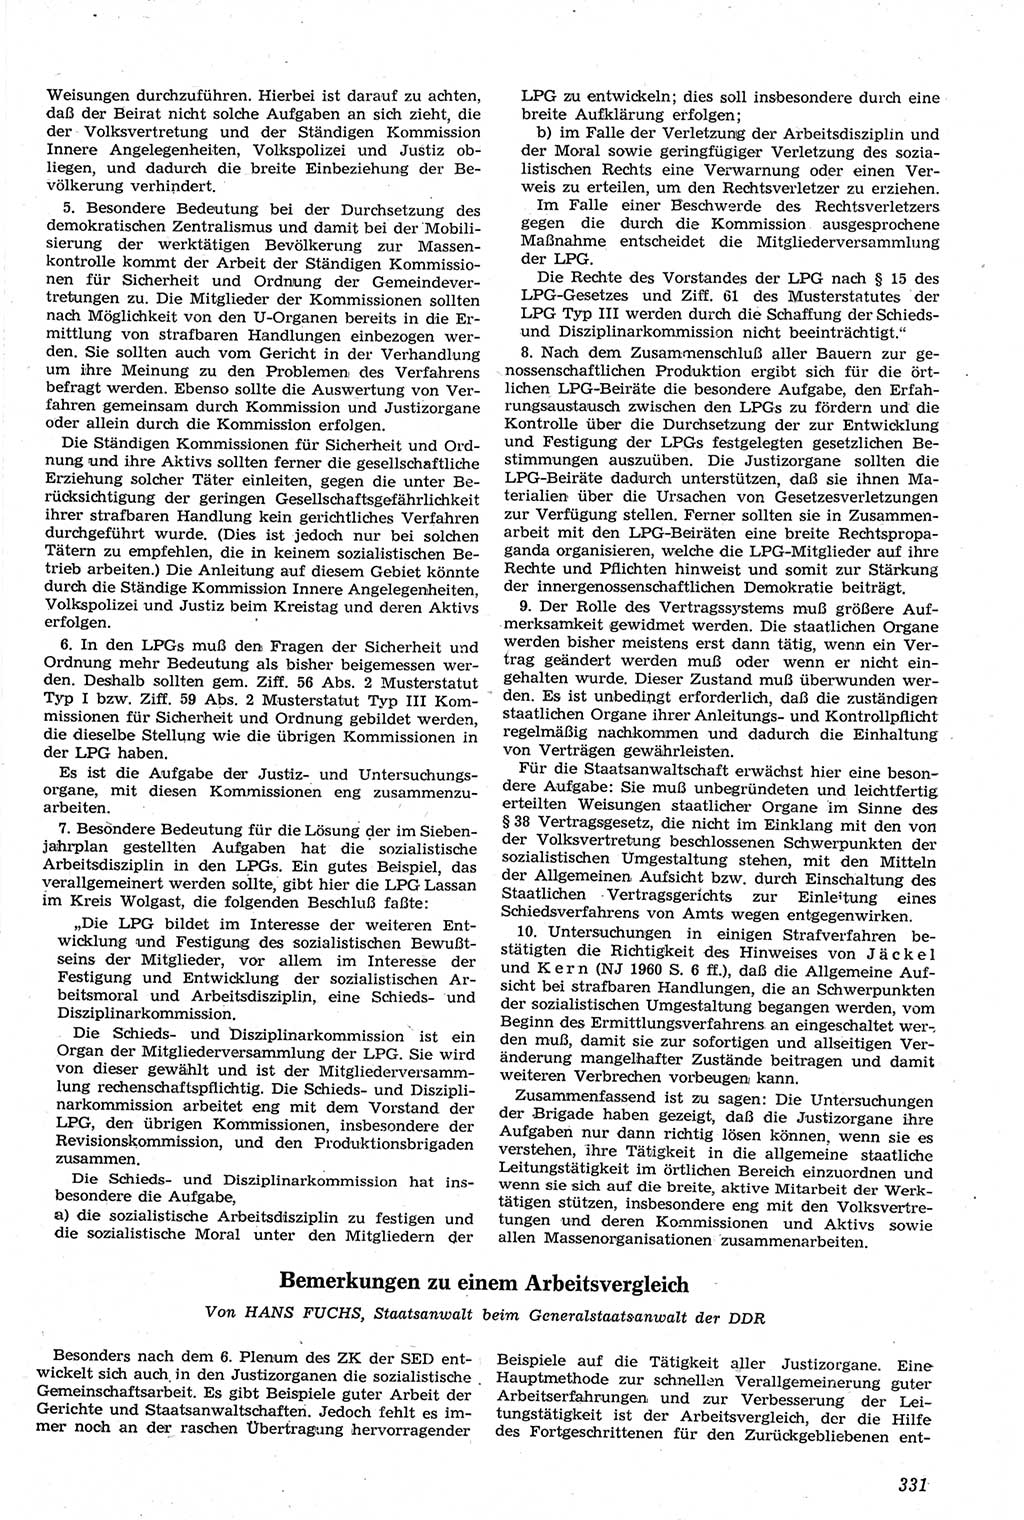 Neue Justiz (NJ), Zeitschrift für Recht und Rechtswissenschaft [Deutsche Demokratische Republik (DDR)], 14. Jahrgang 1960, Seite 331 (NJ DDR 1960, S. 331)